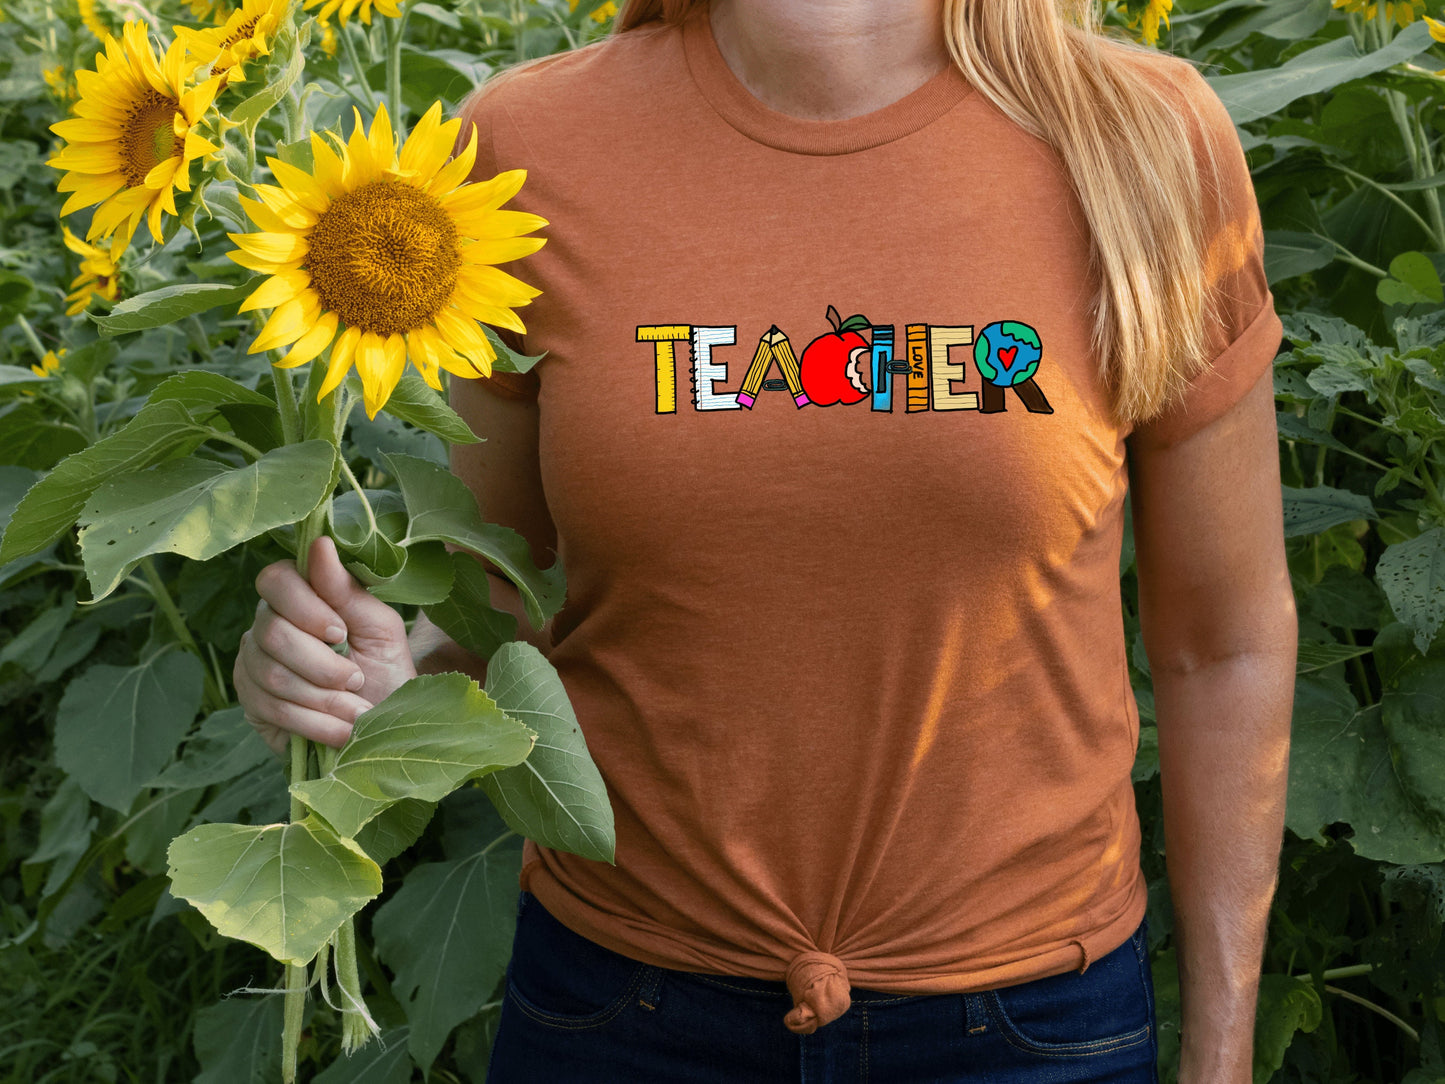 First Grade Teacher Shirt, Team Shirts, First Grade Shirt, Elementary School, Teacher Shirts, 1st Grade Shirt